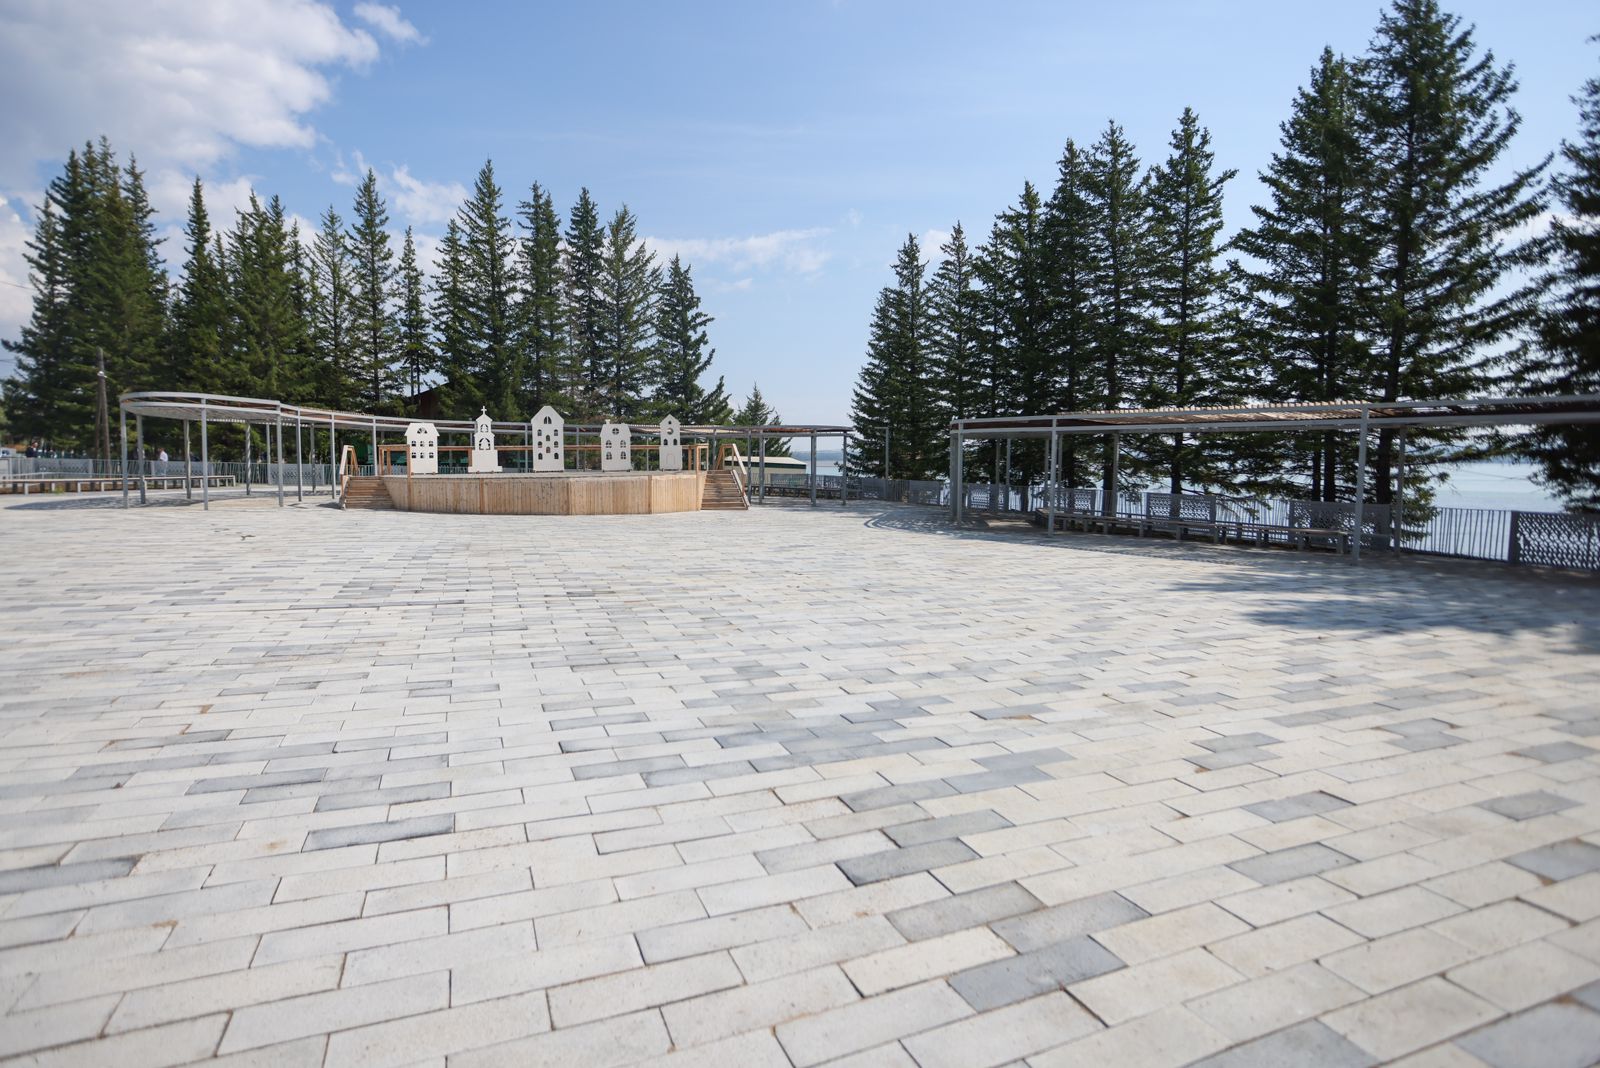 Площадь Славы и мини-парк благоустроили в Усть-Майском районе Якутии